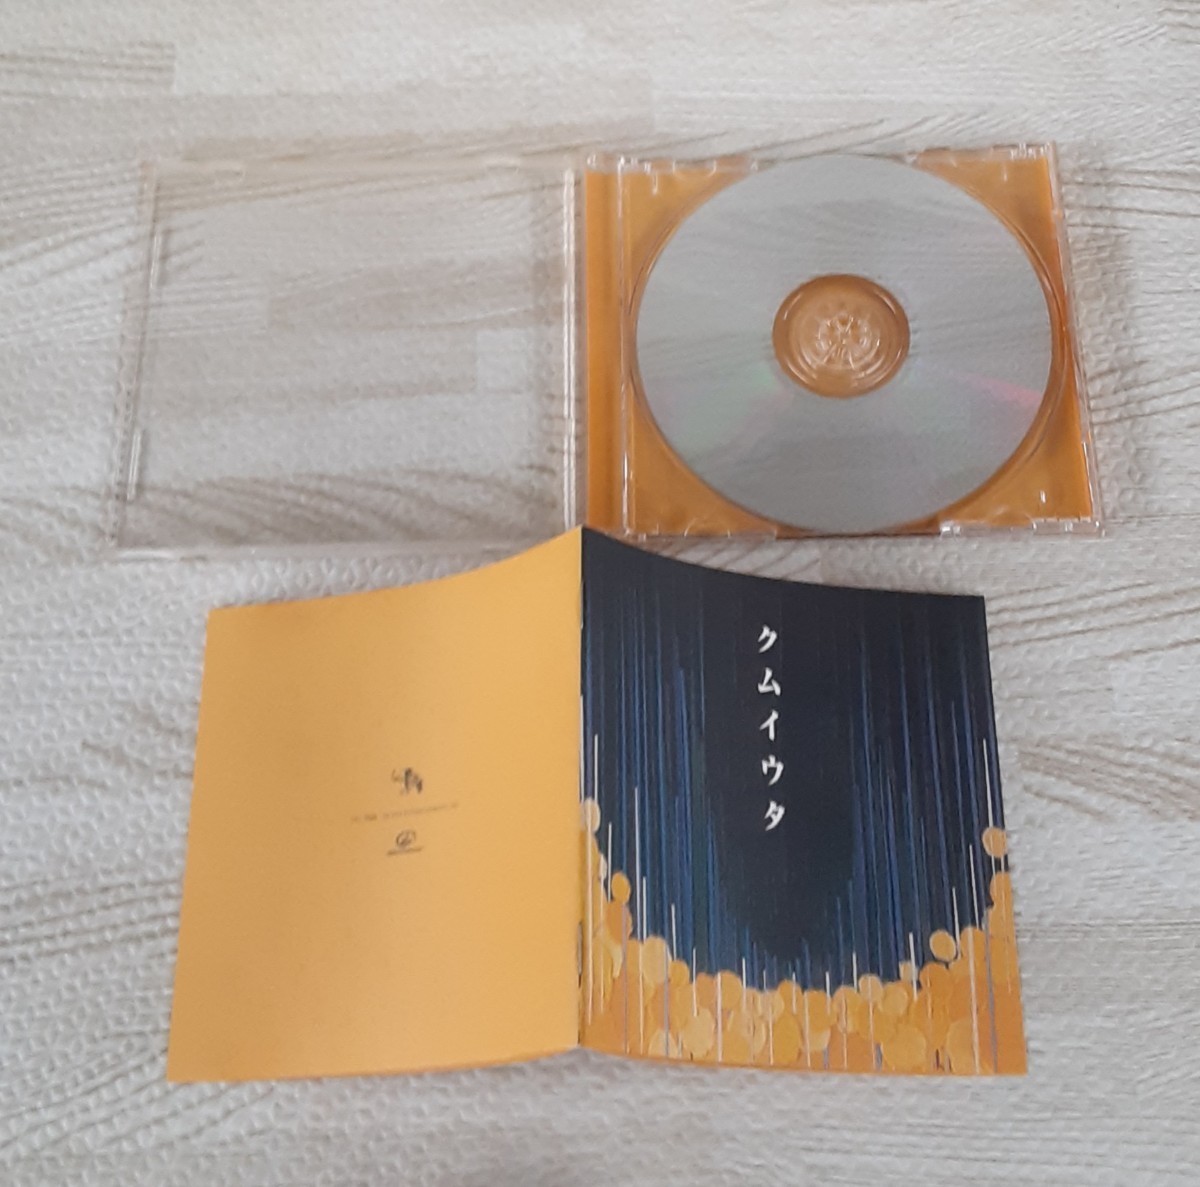 Cocco クムイウタ 1998 こっこ 音楽 CD アルバム コレクション_画像4